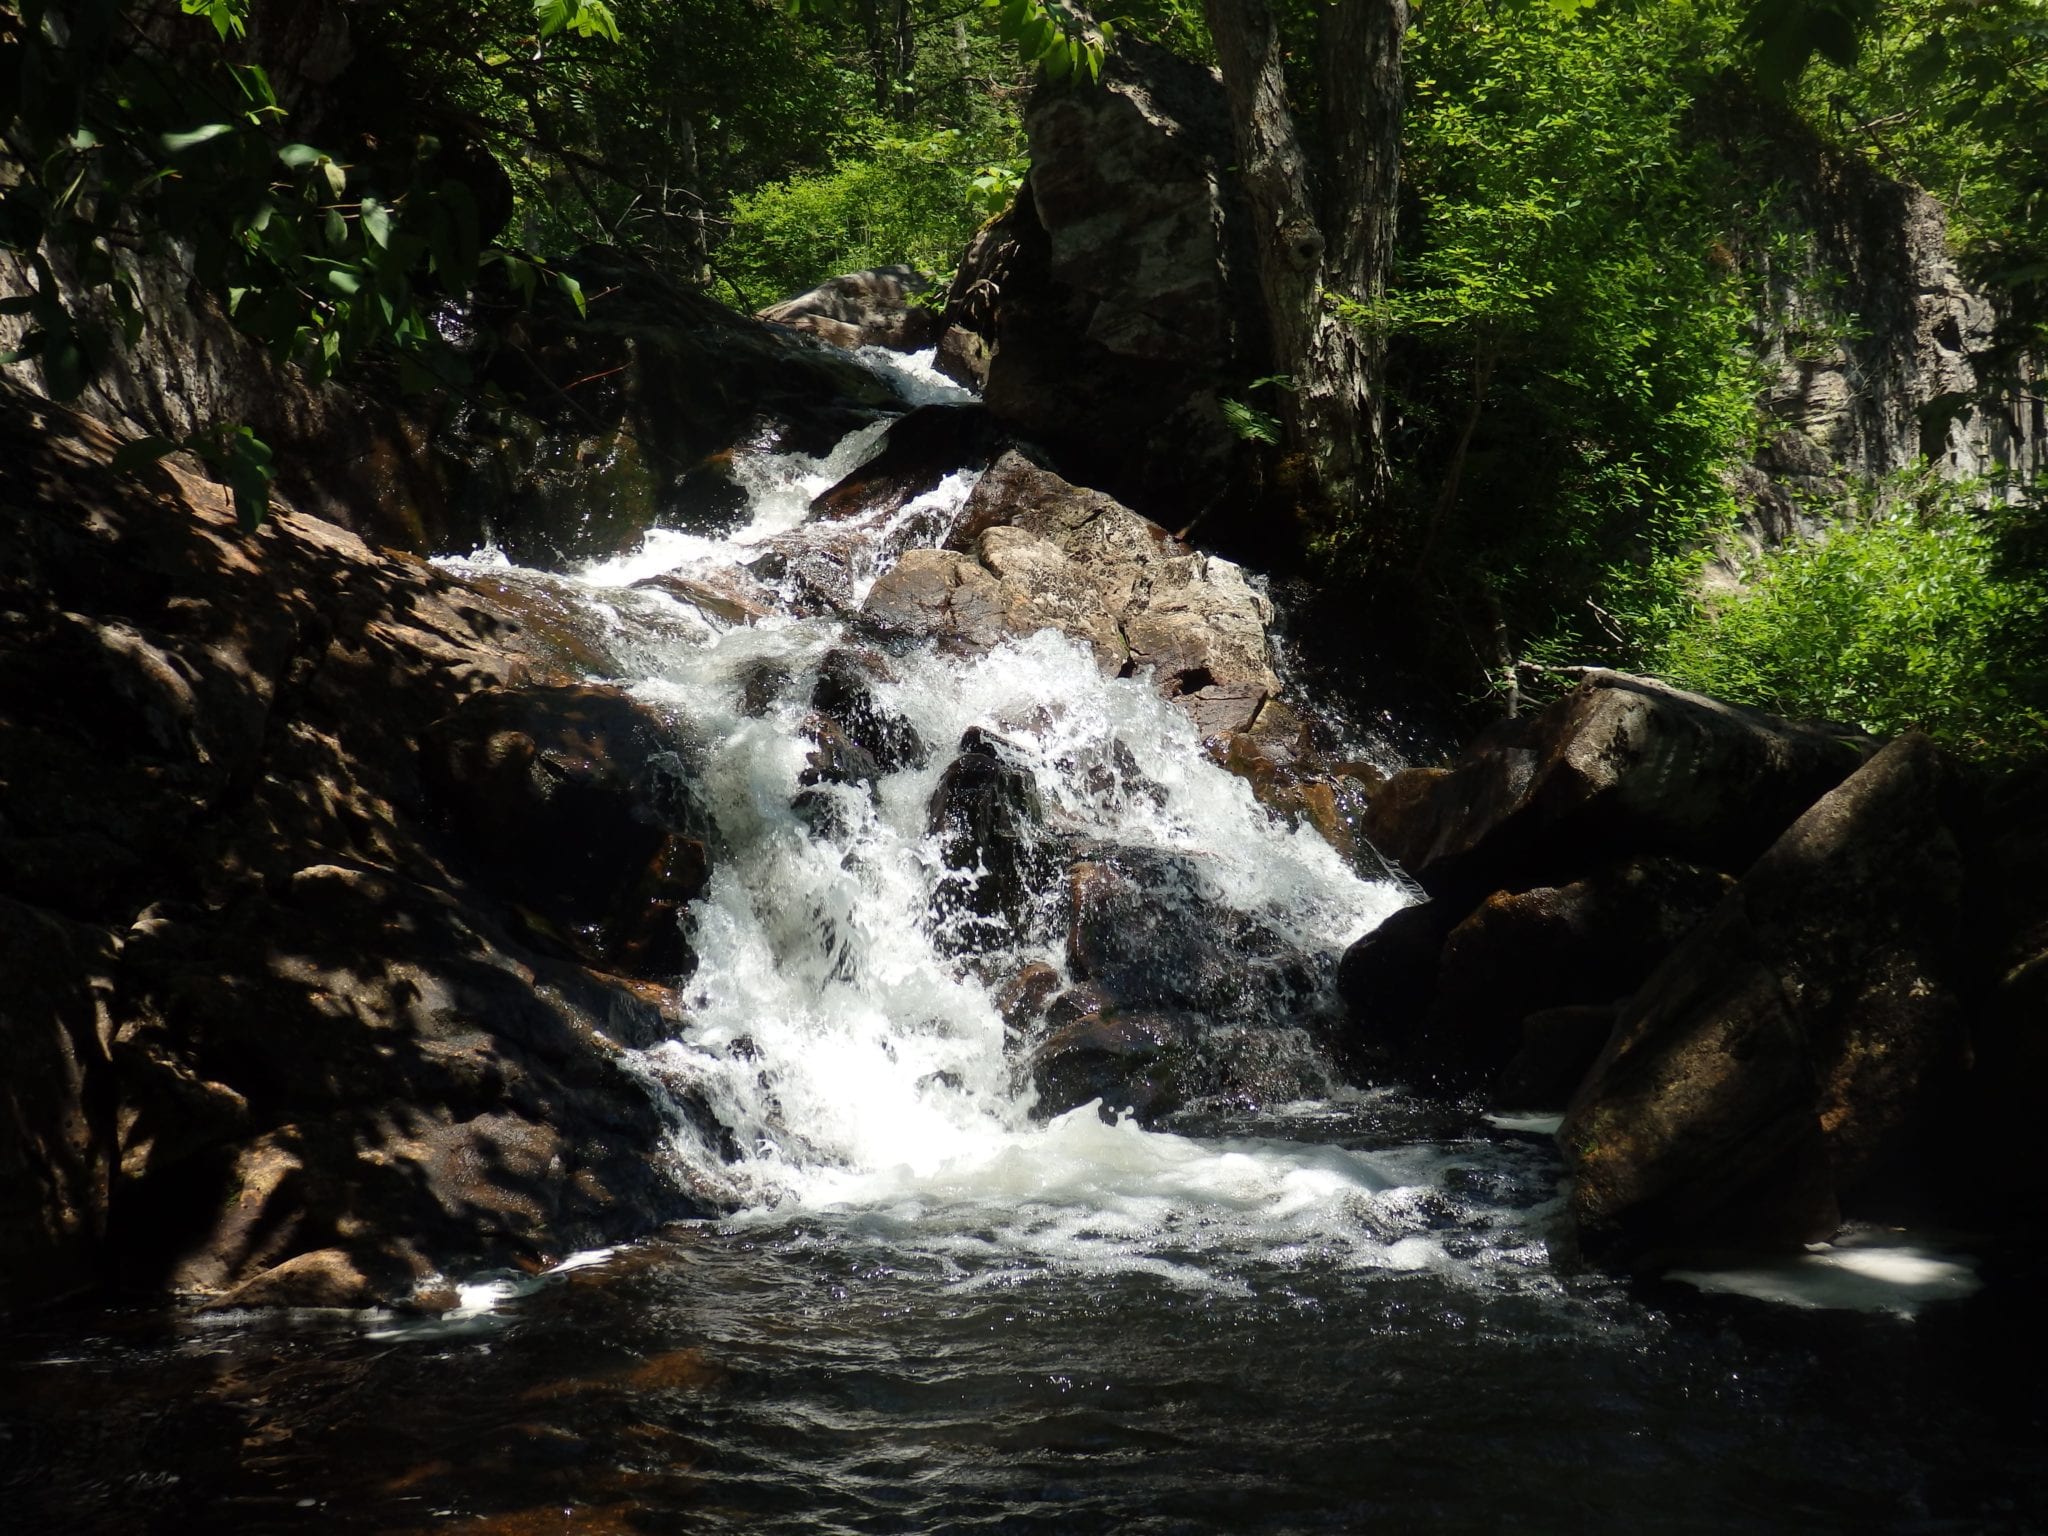 Buttermilk Falls – Little Falls